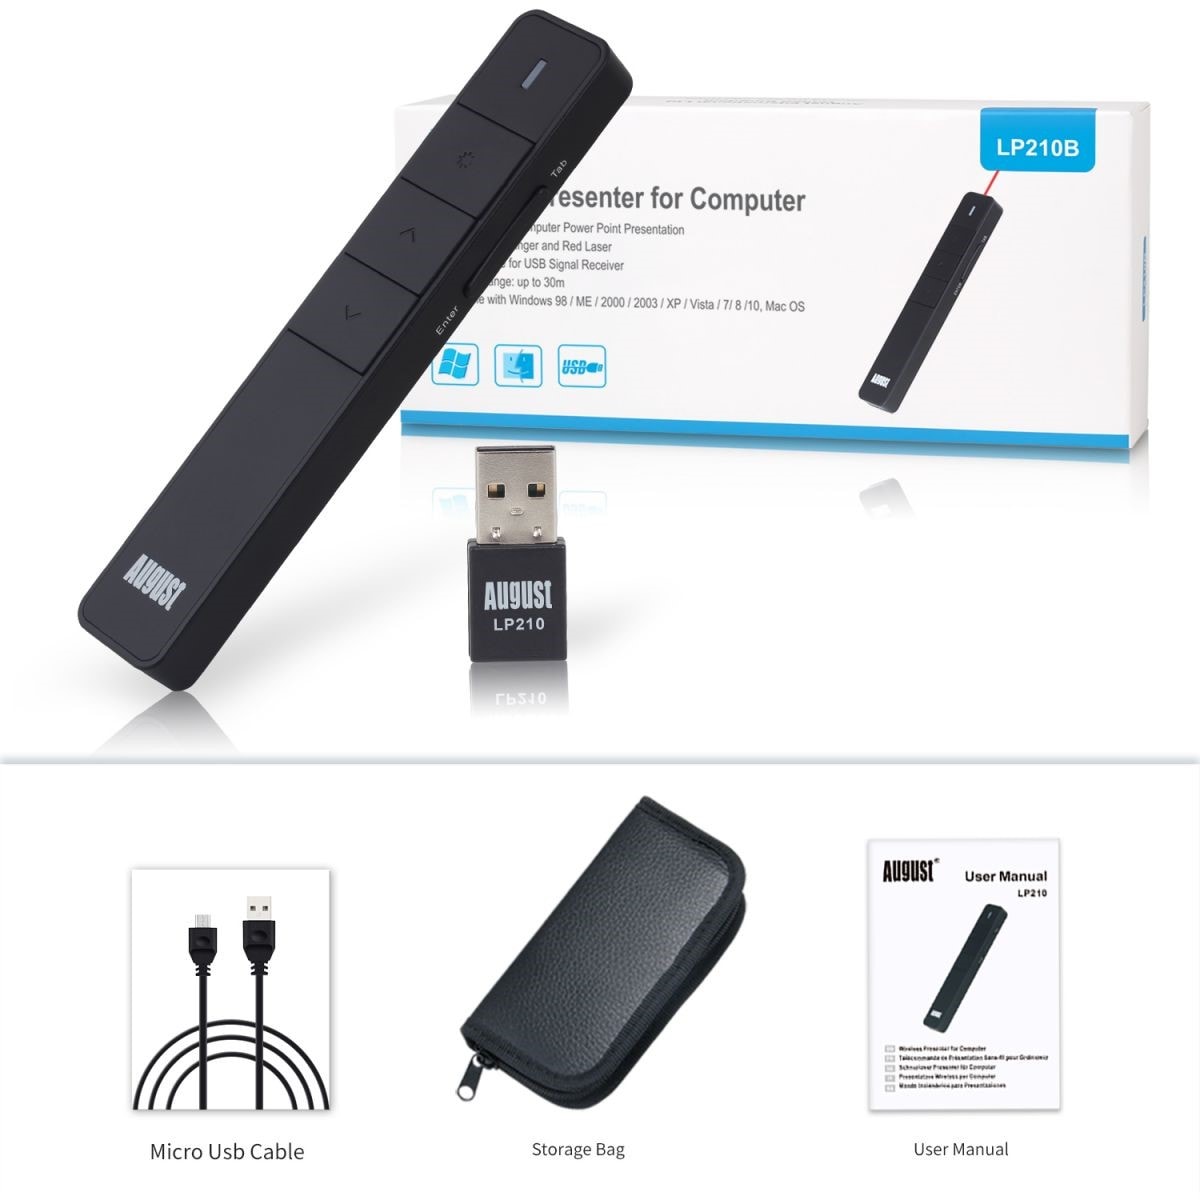 August LP210 Télécommande de présentation USB avec Pointeur laser et  Batterie rechargeable - Noir